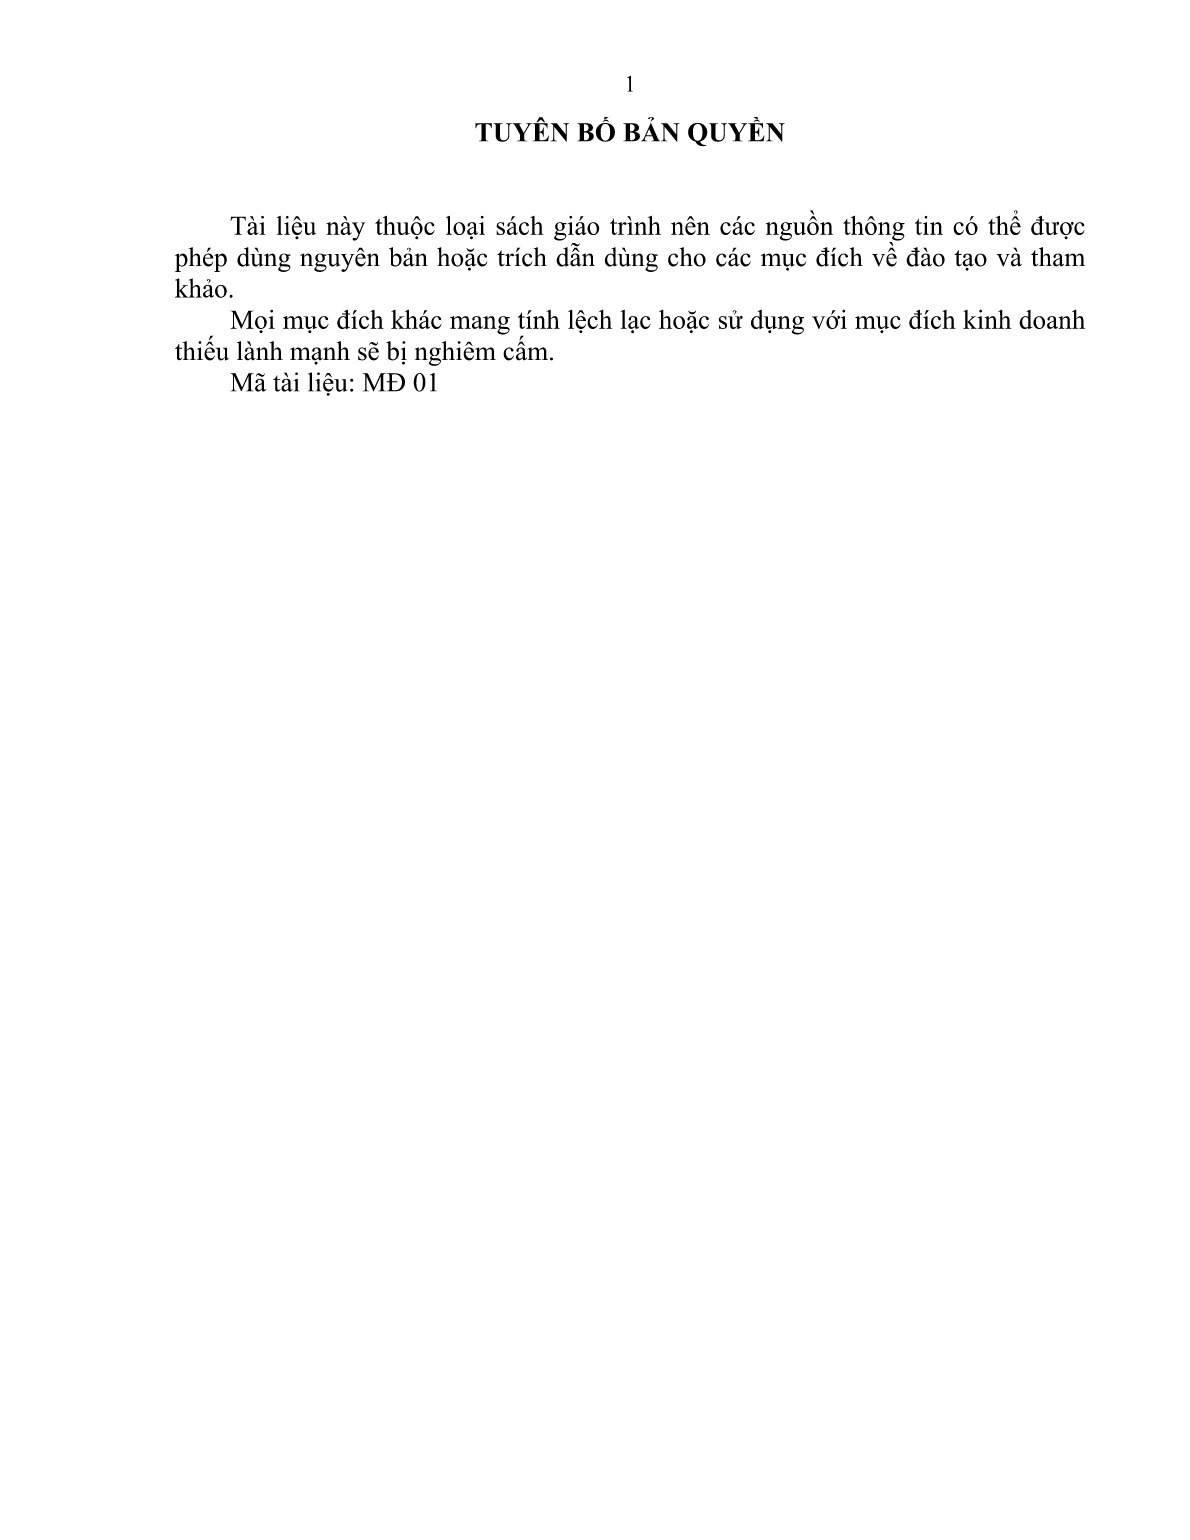 Giáo trình mô đun Nuôi trâu, bò đực giống (Trình độ: Sơ cấp nghề) trang 2